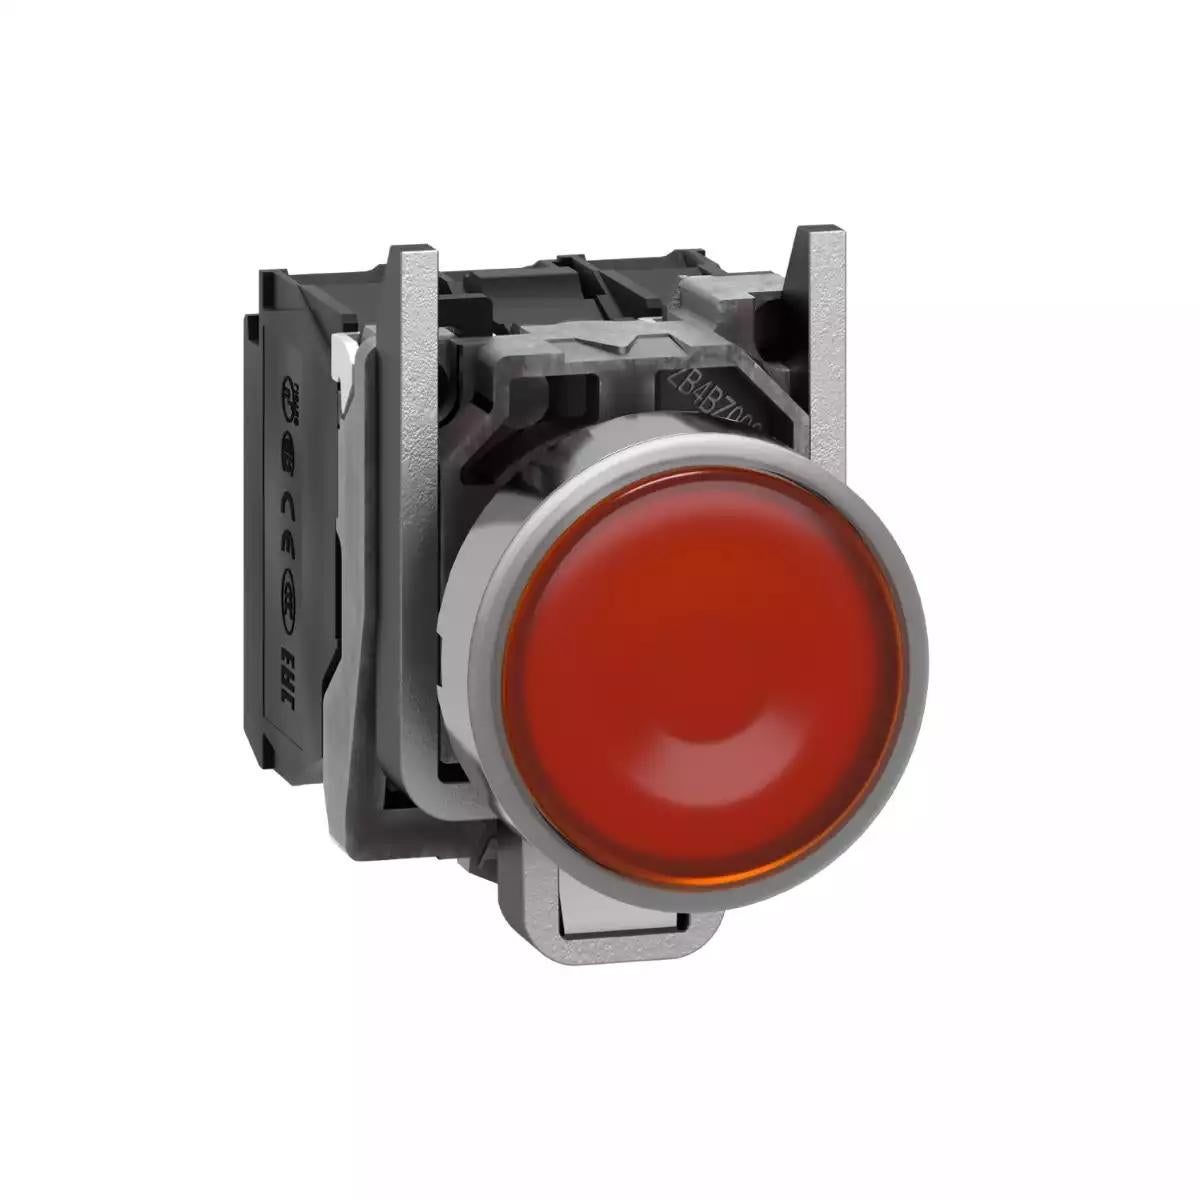 Illuminated push button, Harmony XB4, metal, orange flush, 22mm, universal LED, plain lens, 1NO + 1NC, 110...120V AC